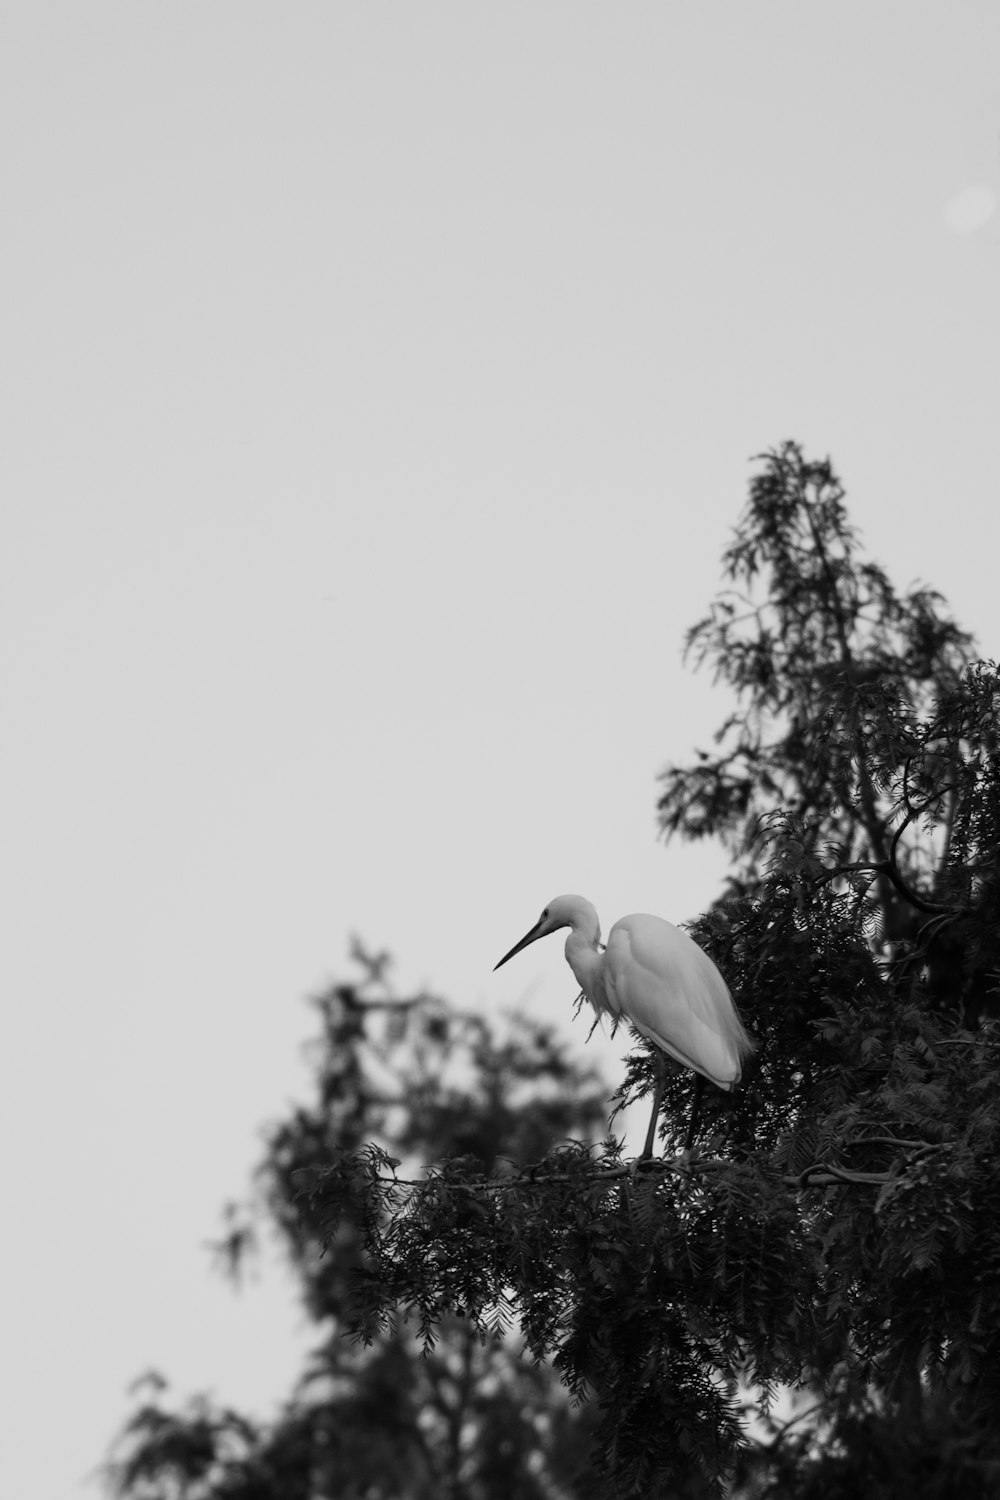 Cigüeña blanca volando durante el día